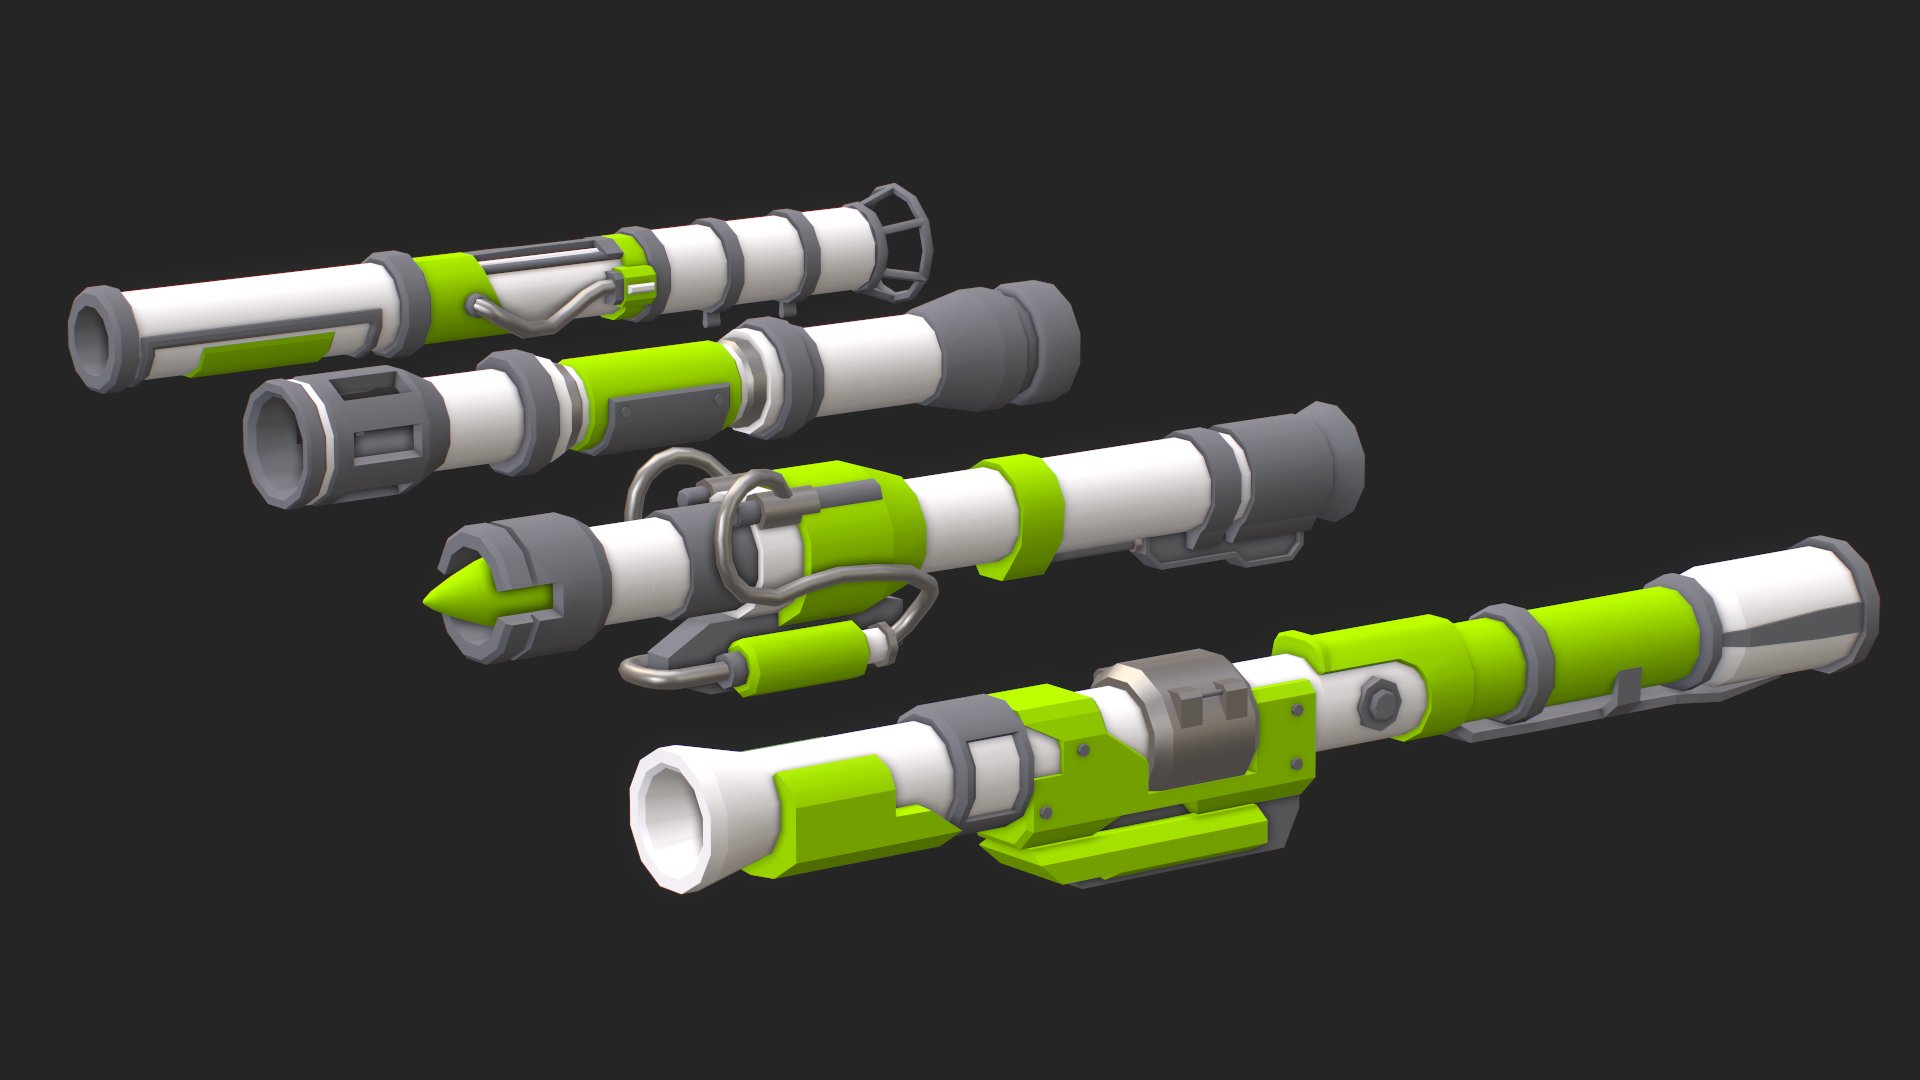 Roblox Rocket Launcher Remodel: Free 3D Asset - Community Resources -  Developer Forum